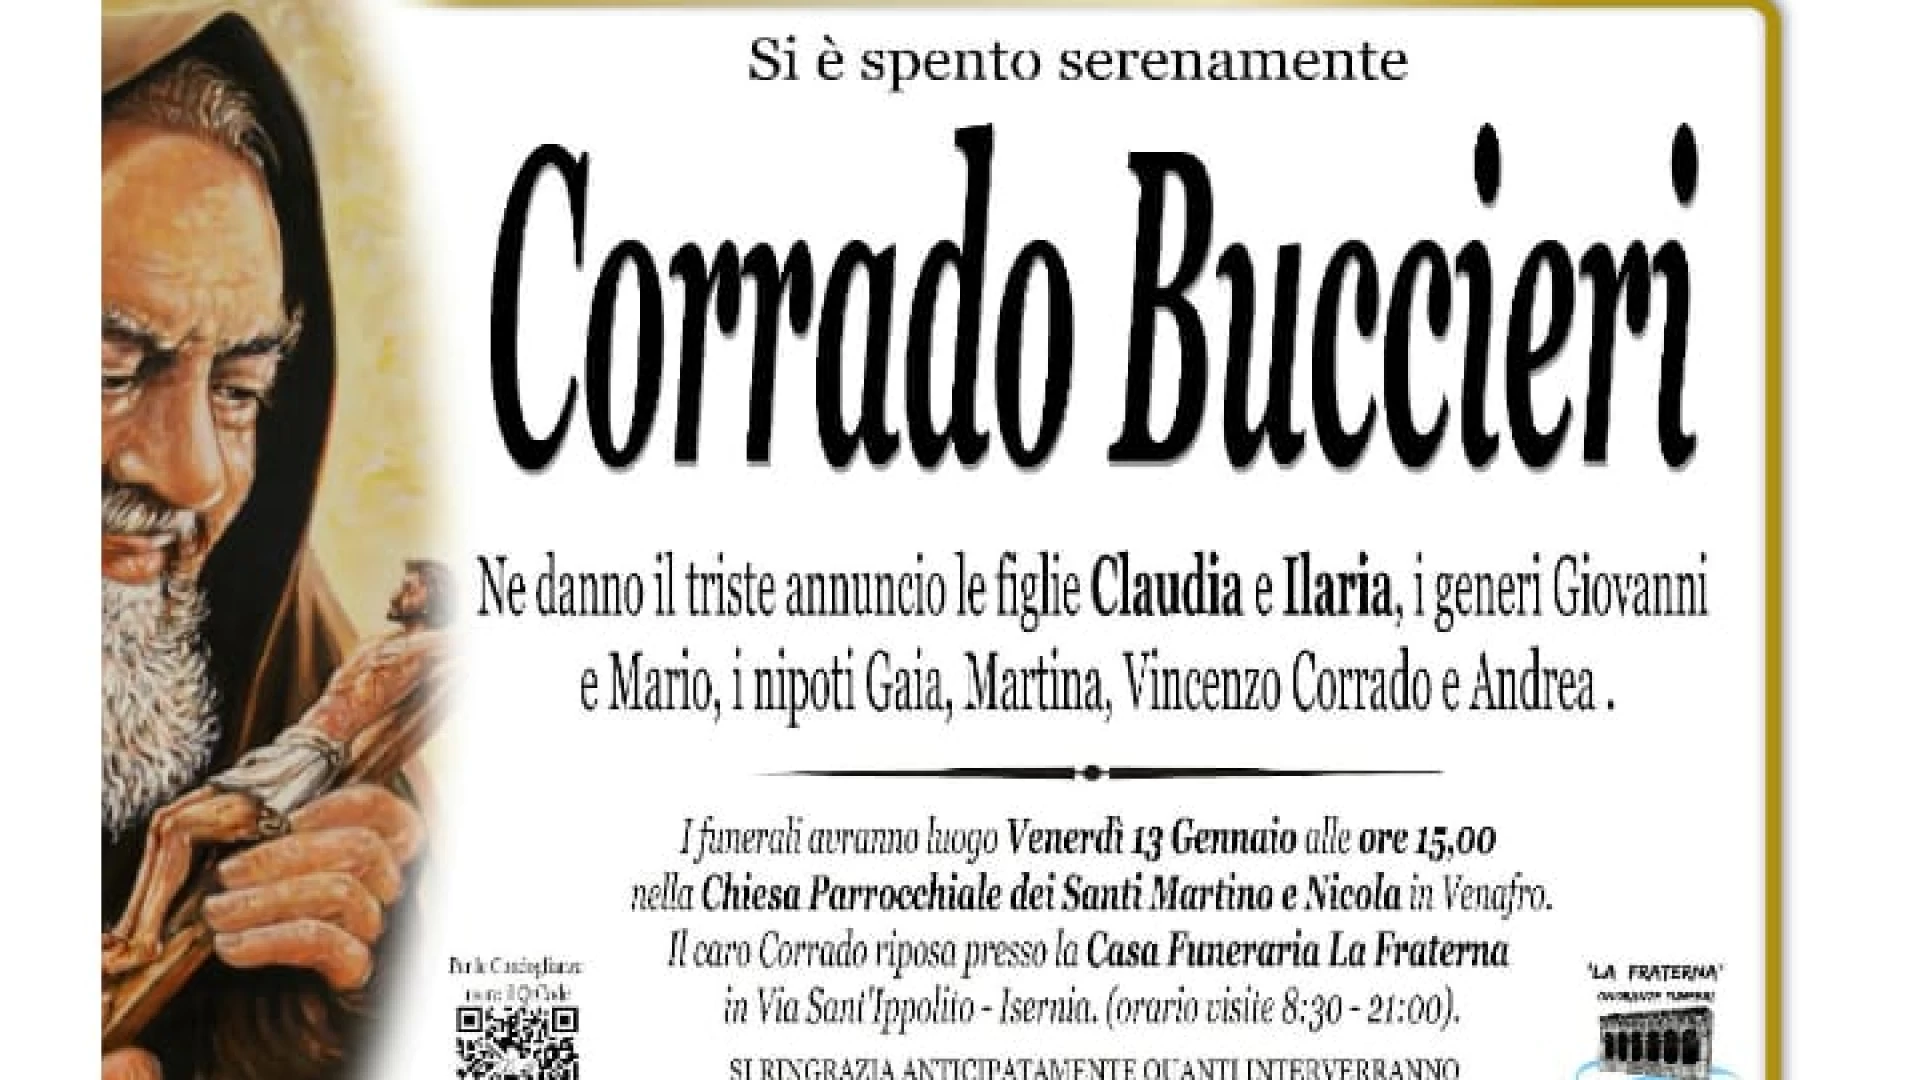 Venafro: domani l’ultimo saluto a Corrado Buccieri. Era stato fondatore e direttore del cartaceo “Il Volturno”.